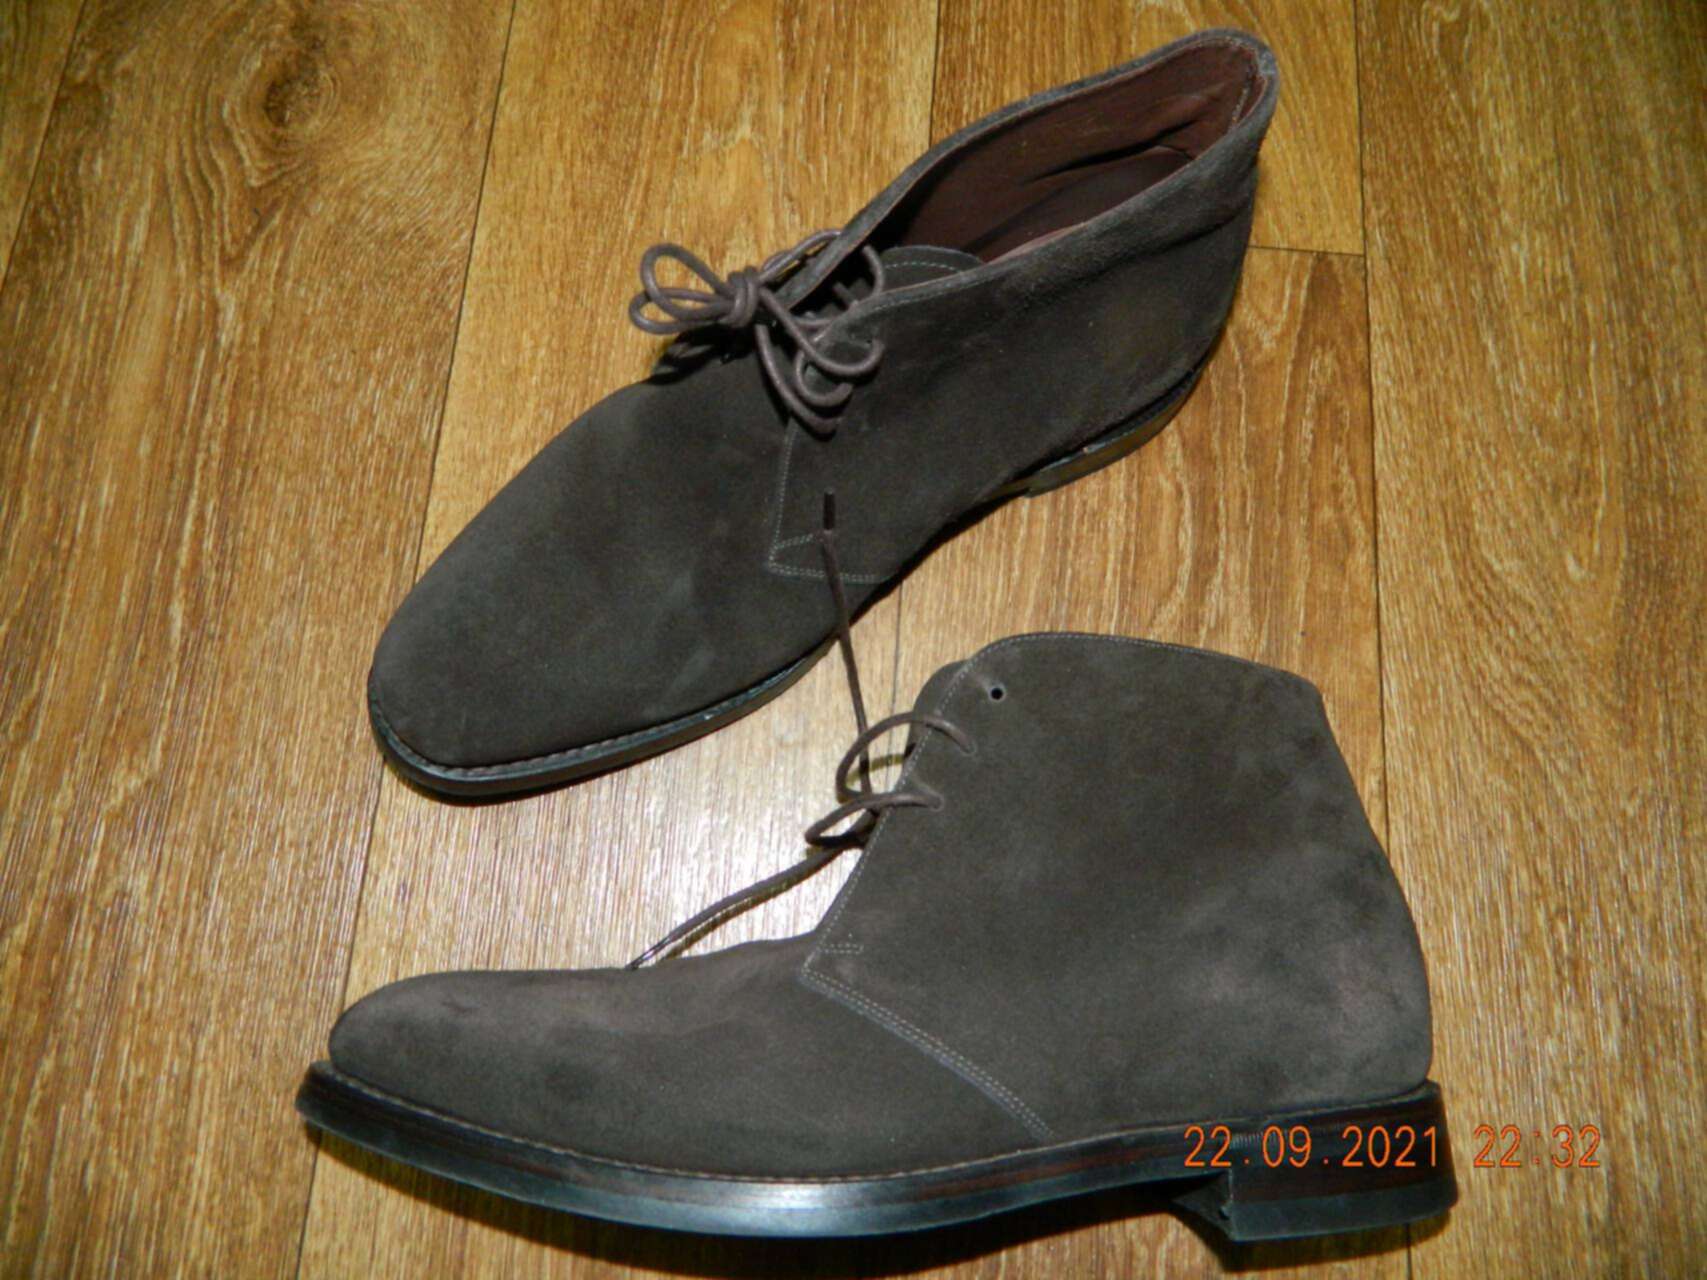 Мужское обувь авито 43. Чероки ботинки 43 размер. Ботинки б-Курдз. Обувь на Автозаводской. Авито.ру личные вещи женская обувь 41-43 размера.